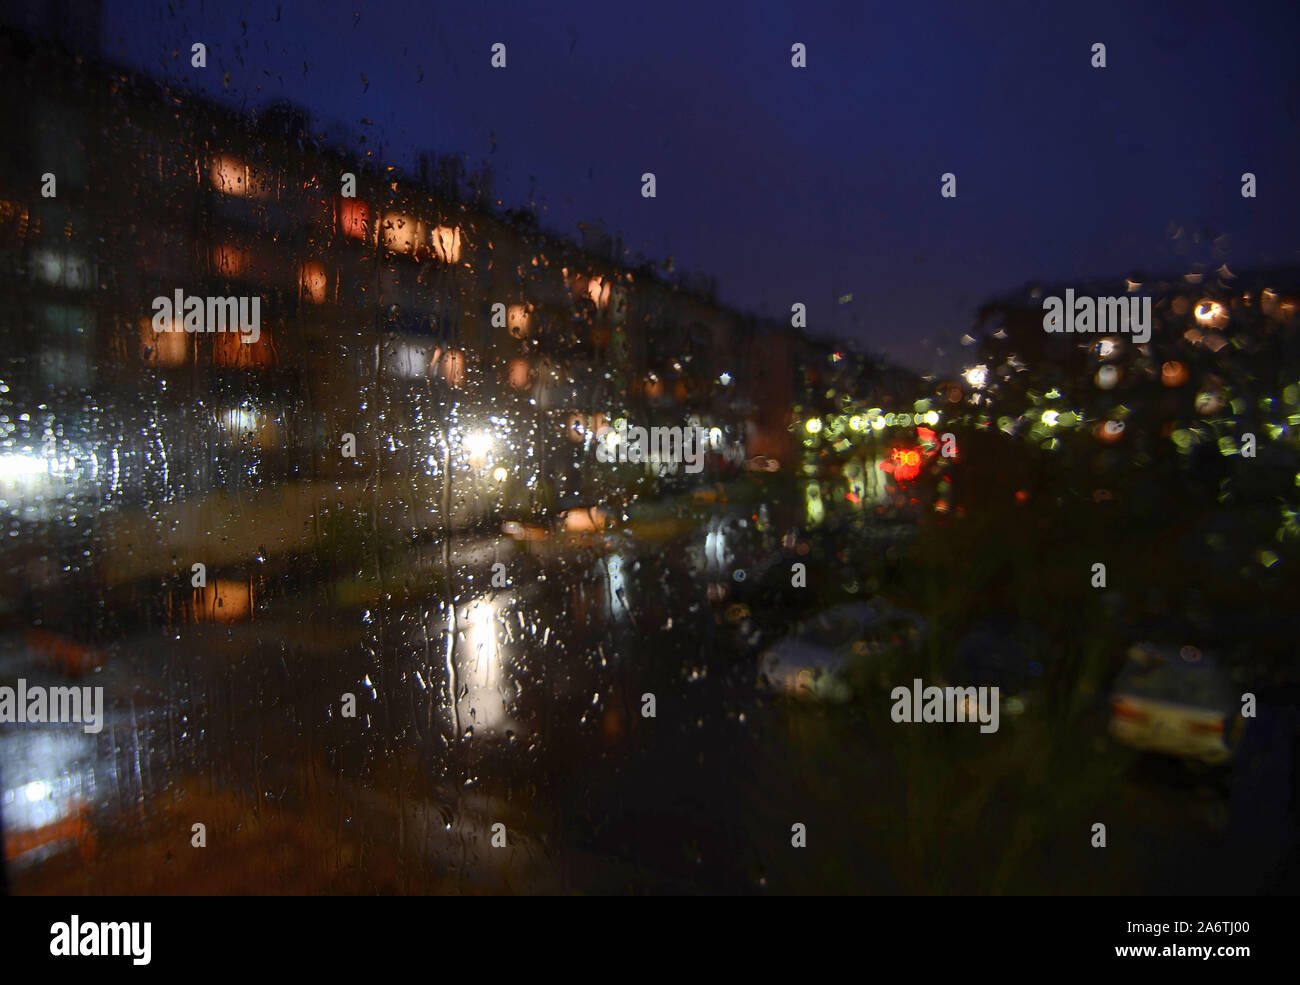 Notte sityscape piovoso al di fuori del riquadro della finestra - defocalizzata sfondo sfocato con gocce d'acqua sul vetro, bokeh di illuminazione notturna, automobili parcheggiate. Mela Foto Stock